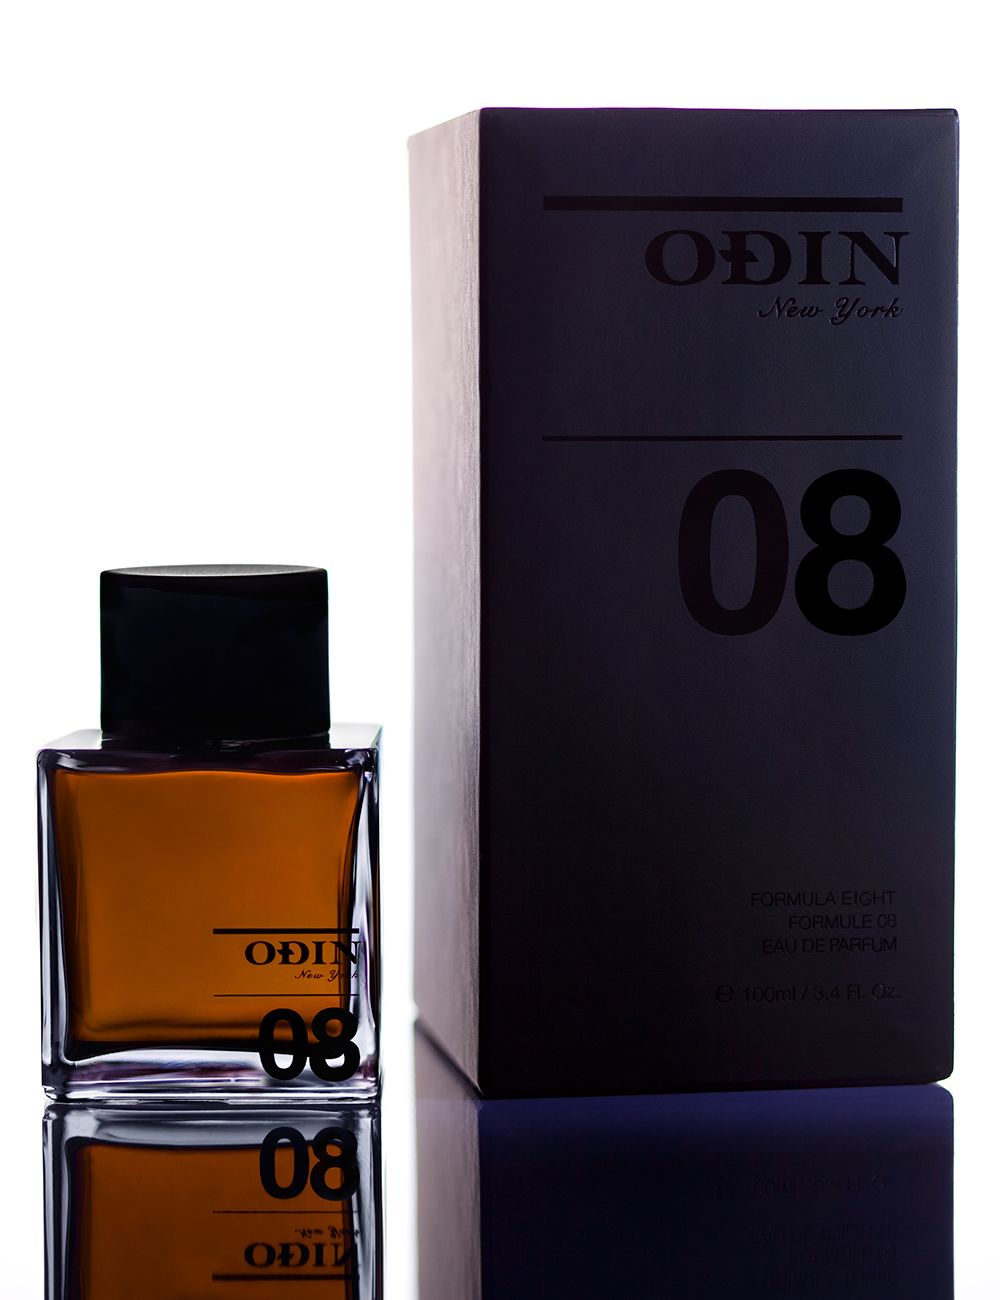 Odin New York 08 Seylon Eau de Parfum Abfüllung 5 ml